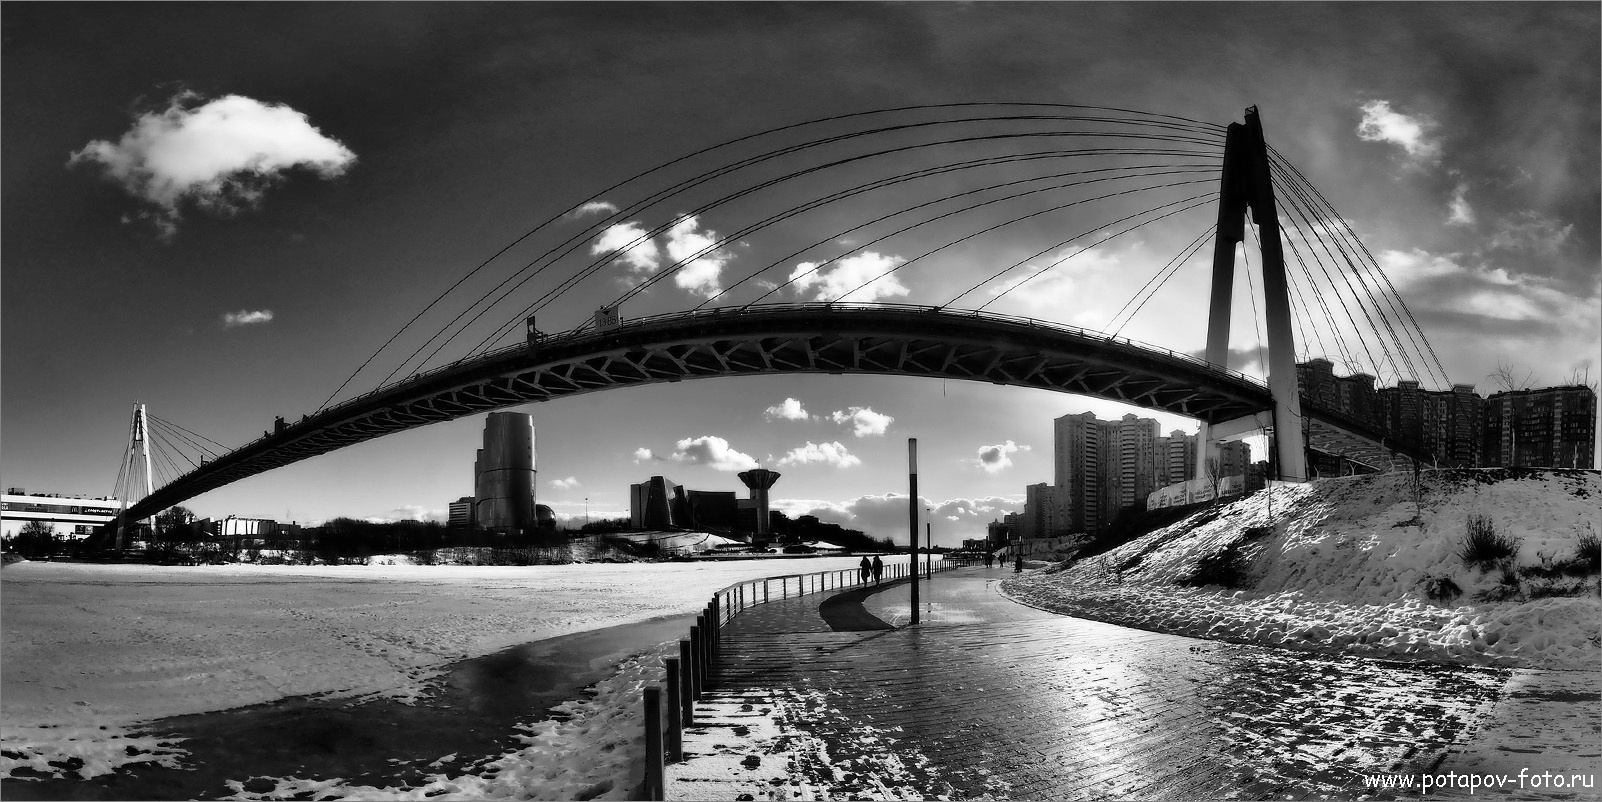 Павшинский мост мост павшинская пойма красногорск вантовыймост река пешеходный панорама